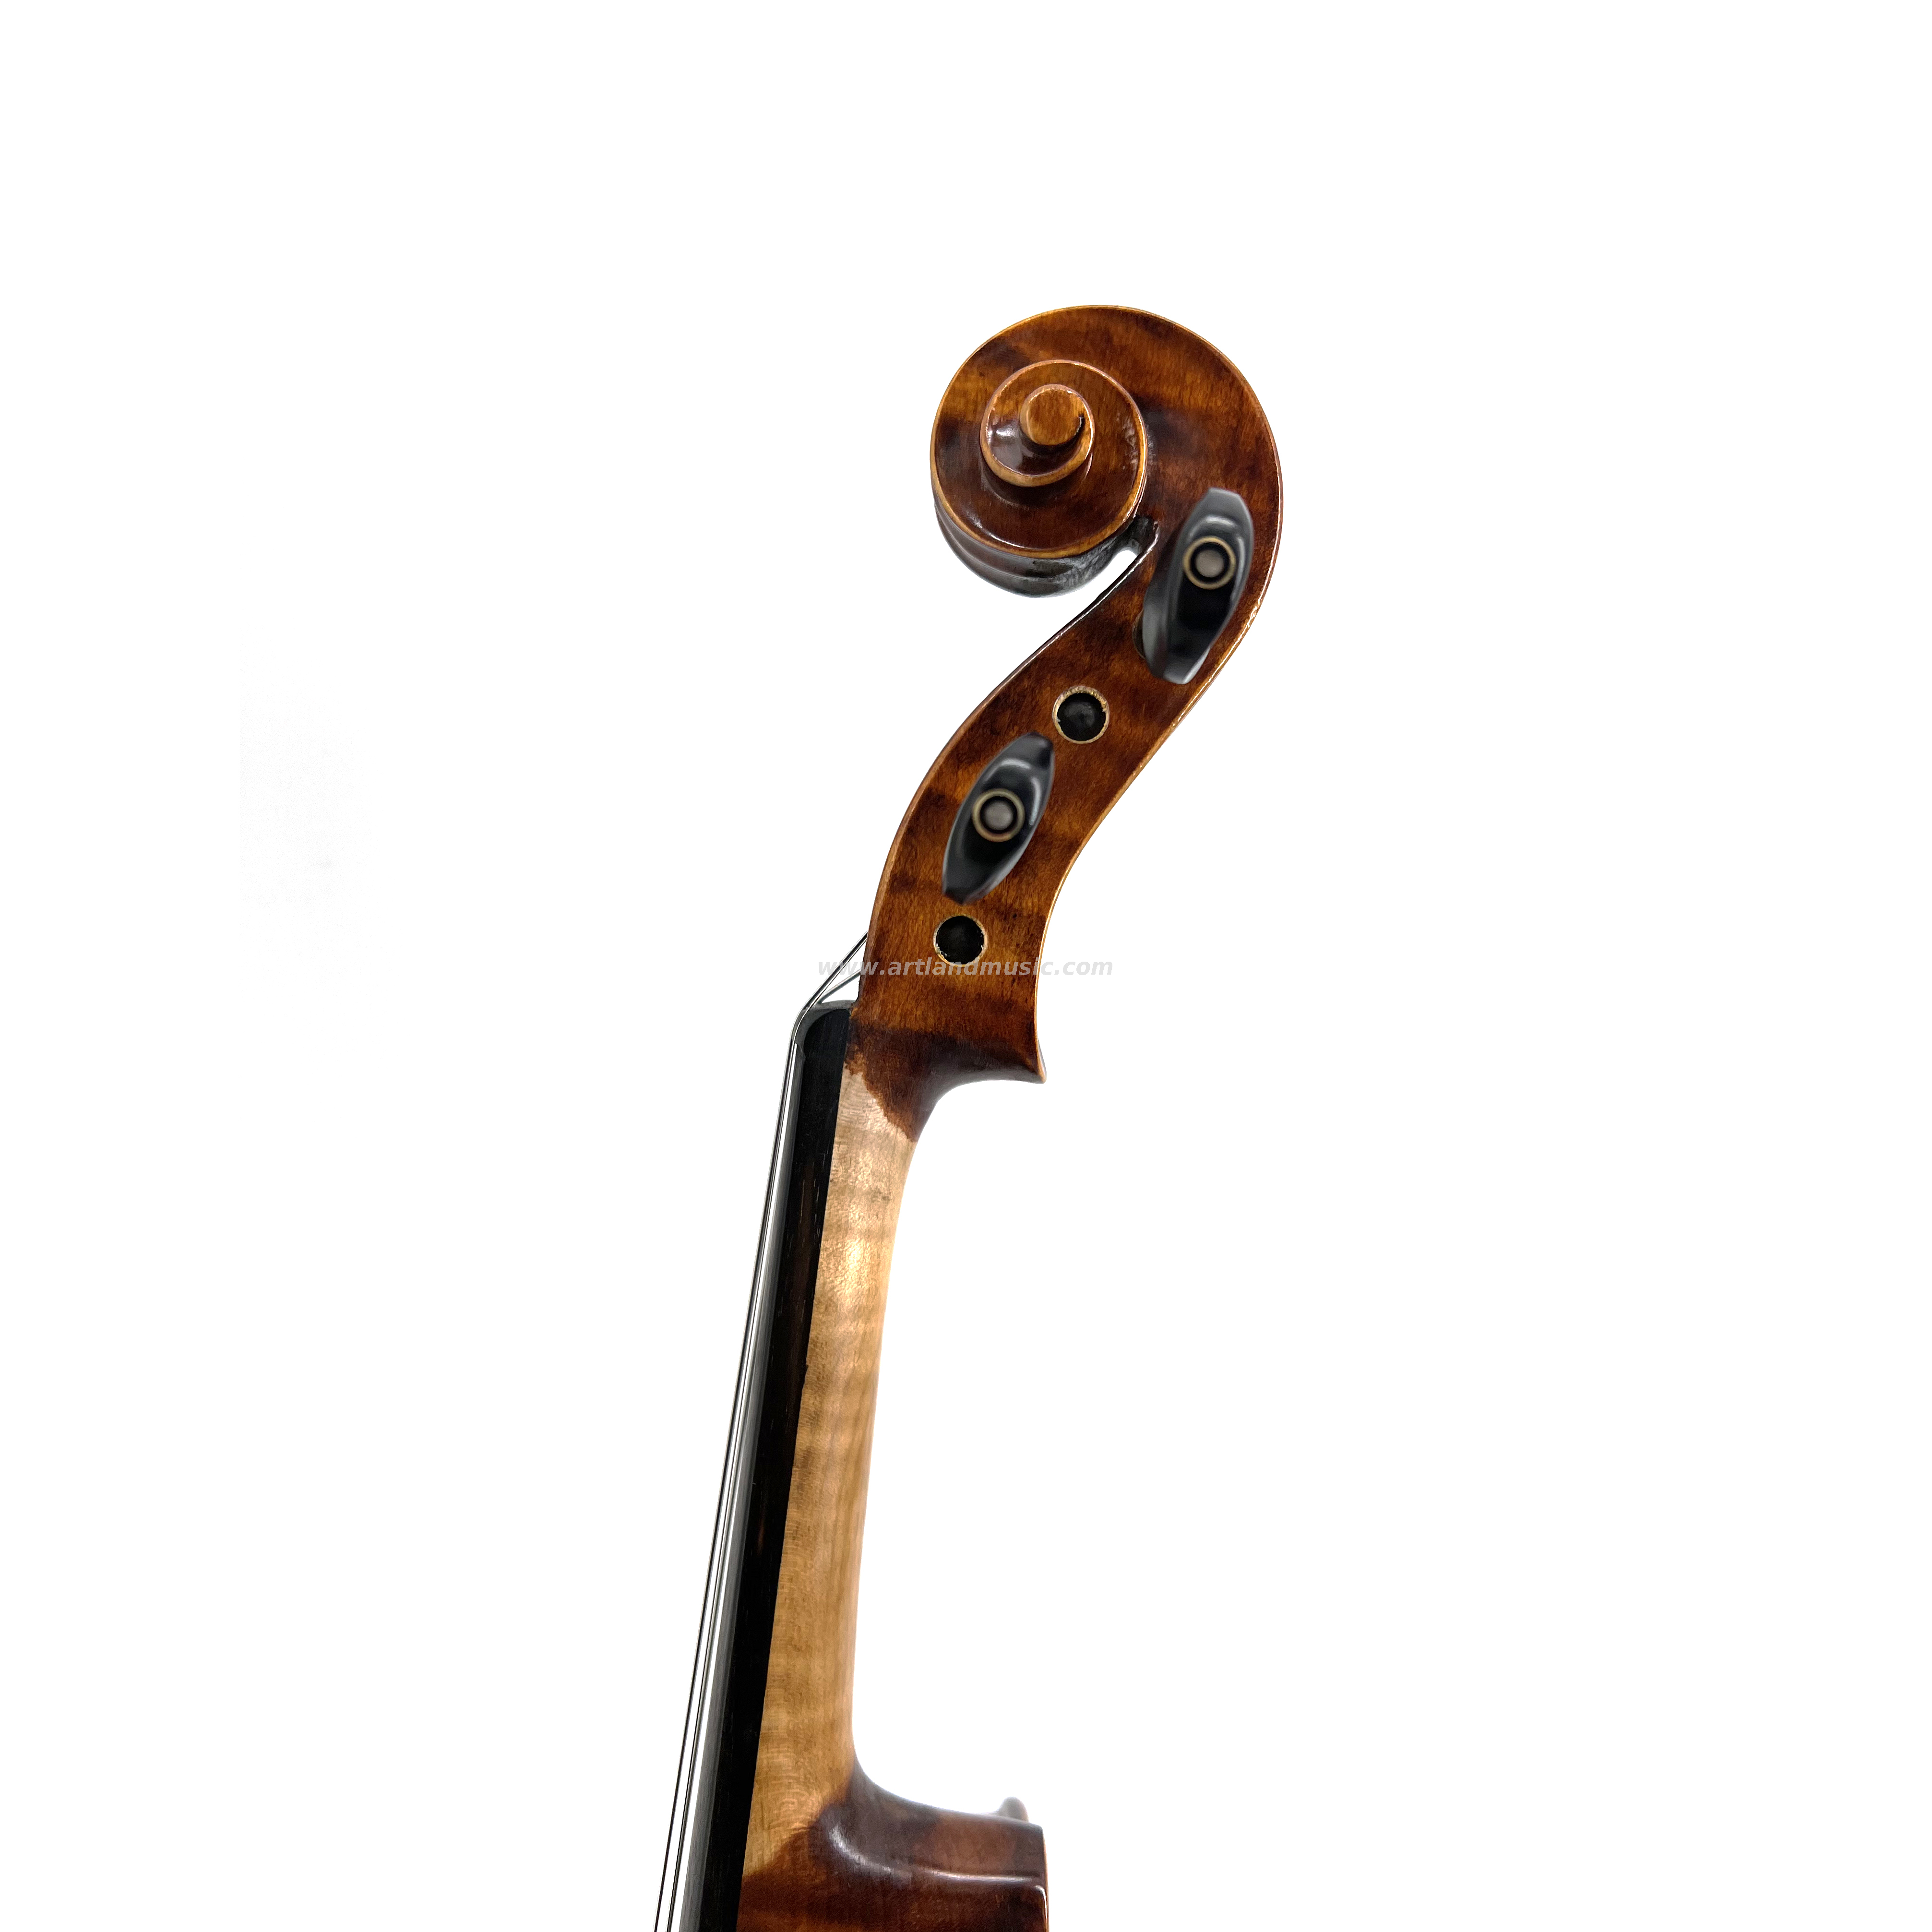 Bonito violín moderado de llama con barniz manual y artesanía advocada (VO150)